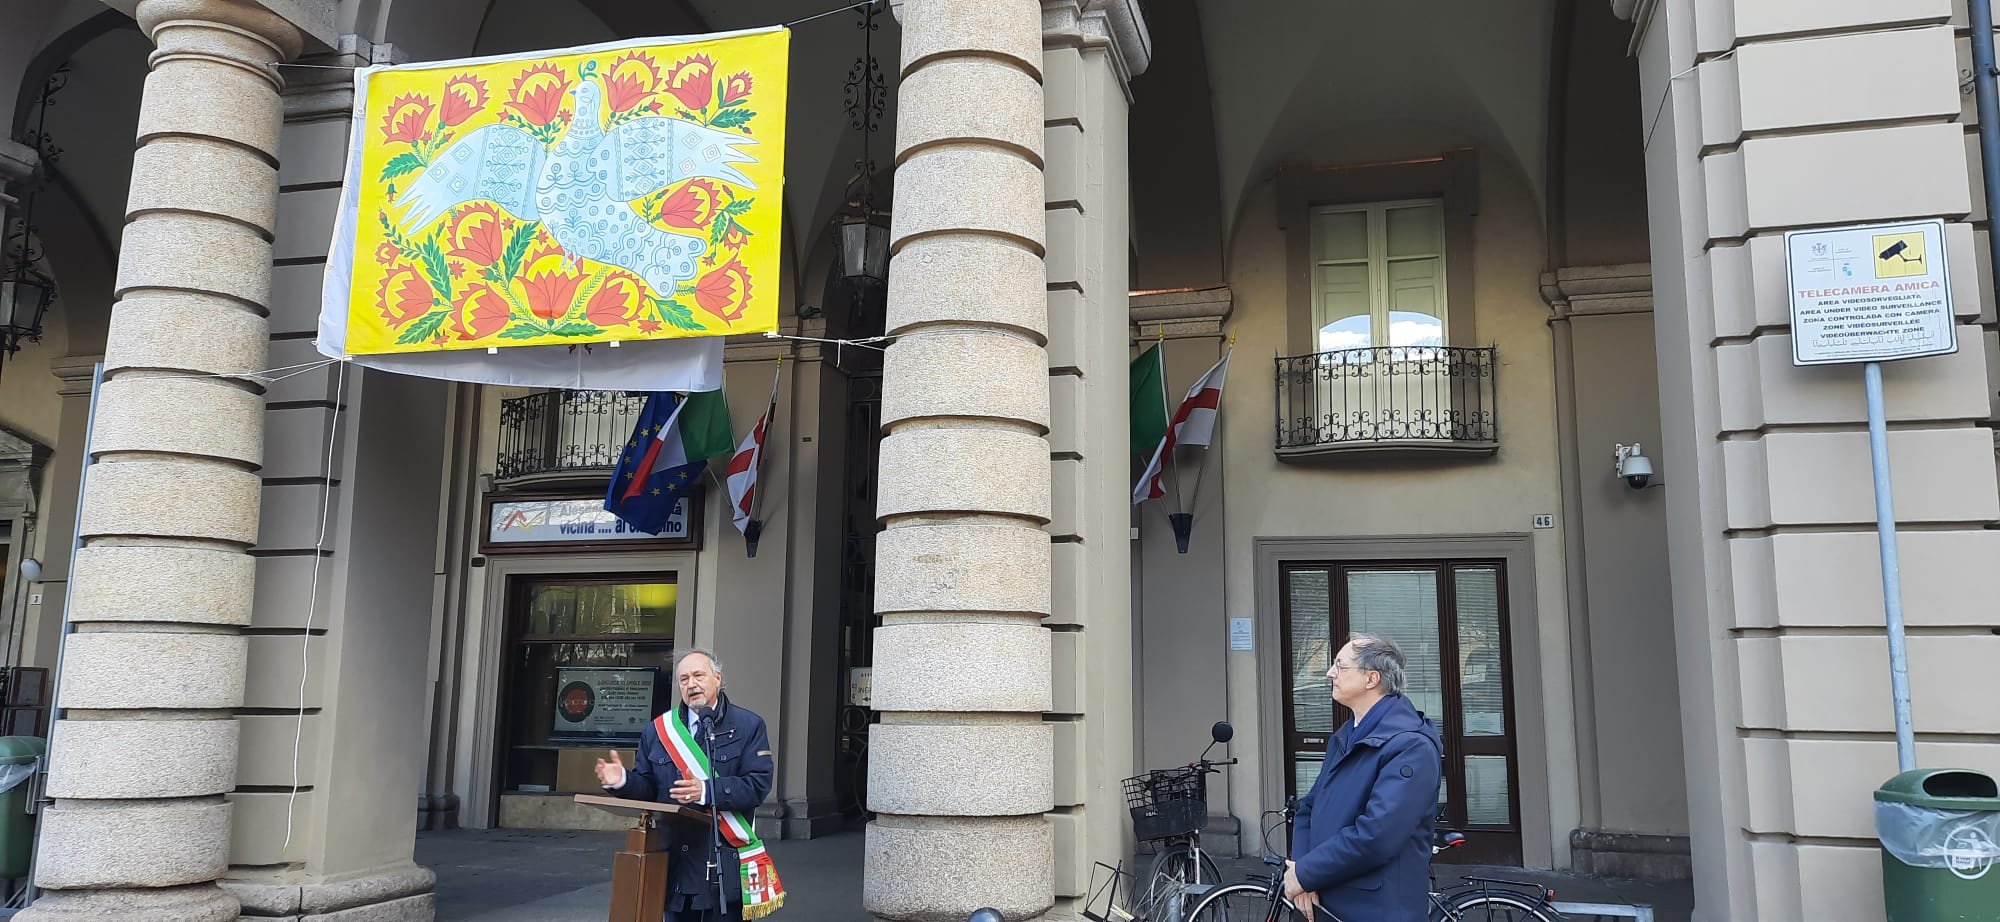 Ucraina: sul Palazzo Comunale di Alessandria il quadro per la pace realizzato dai detenuti